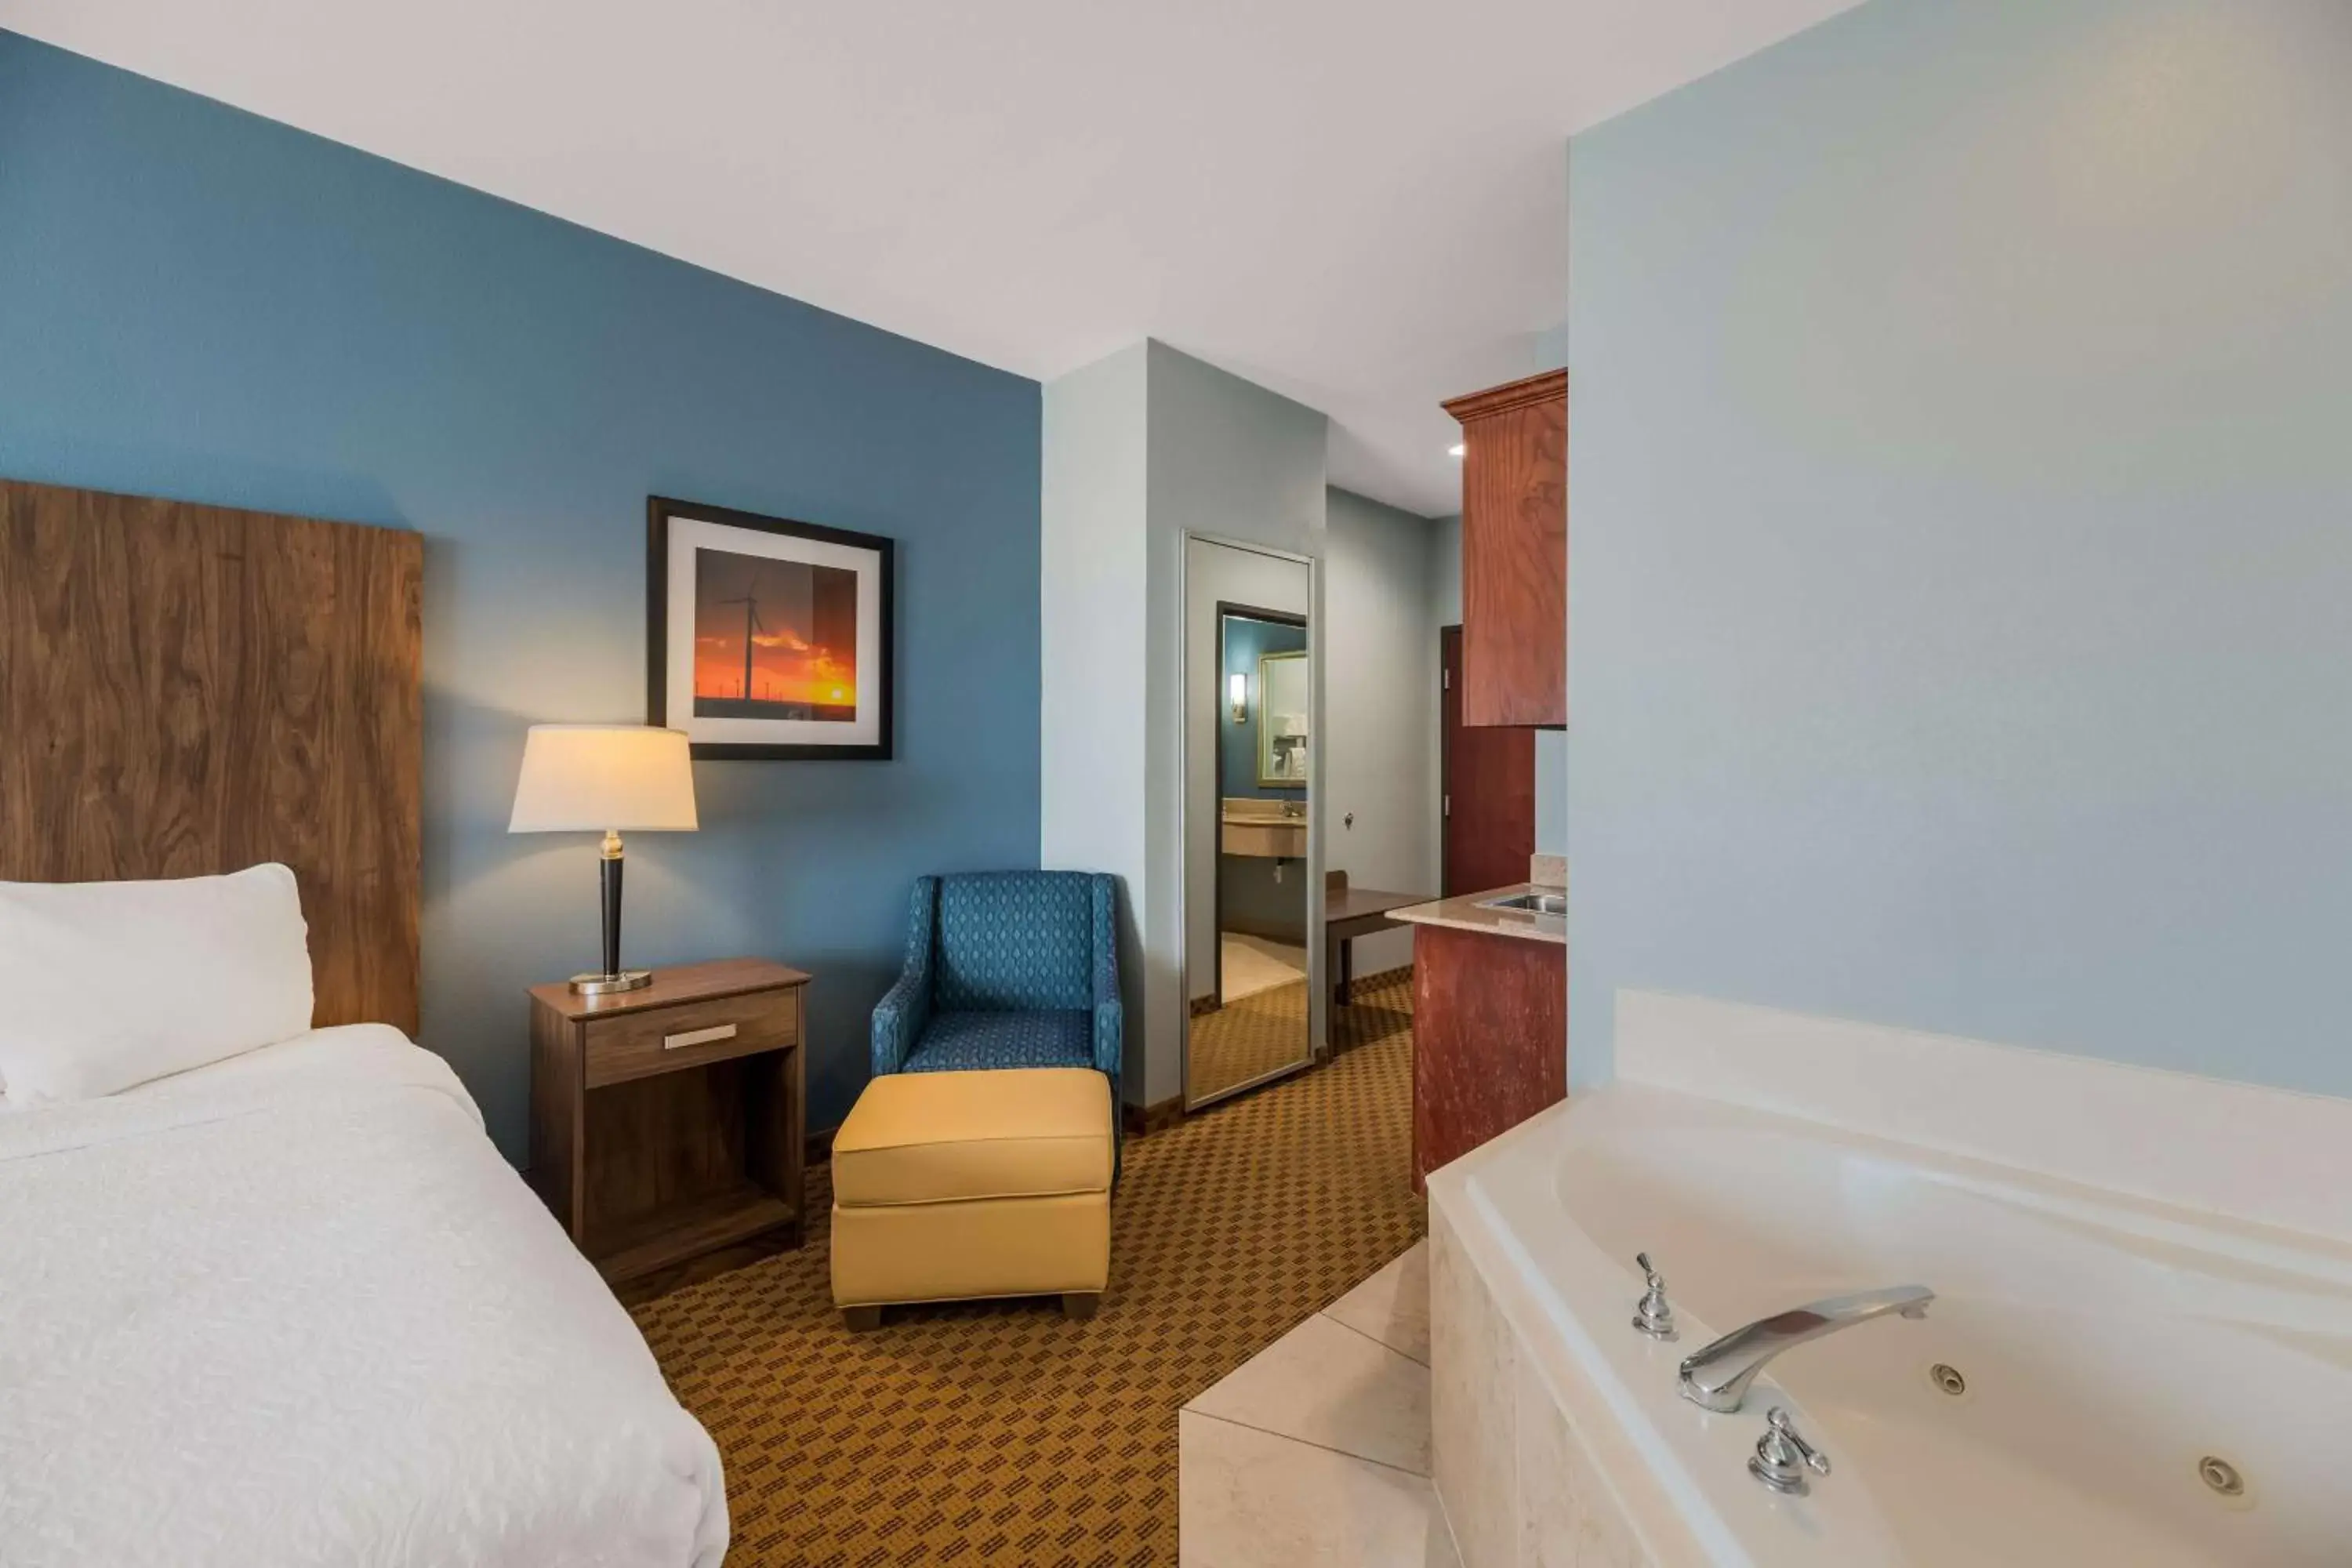 Bedroom, Bathroom in Best Western South Plains Inn & Suites